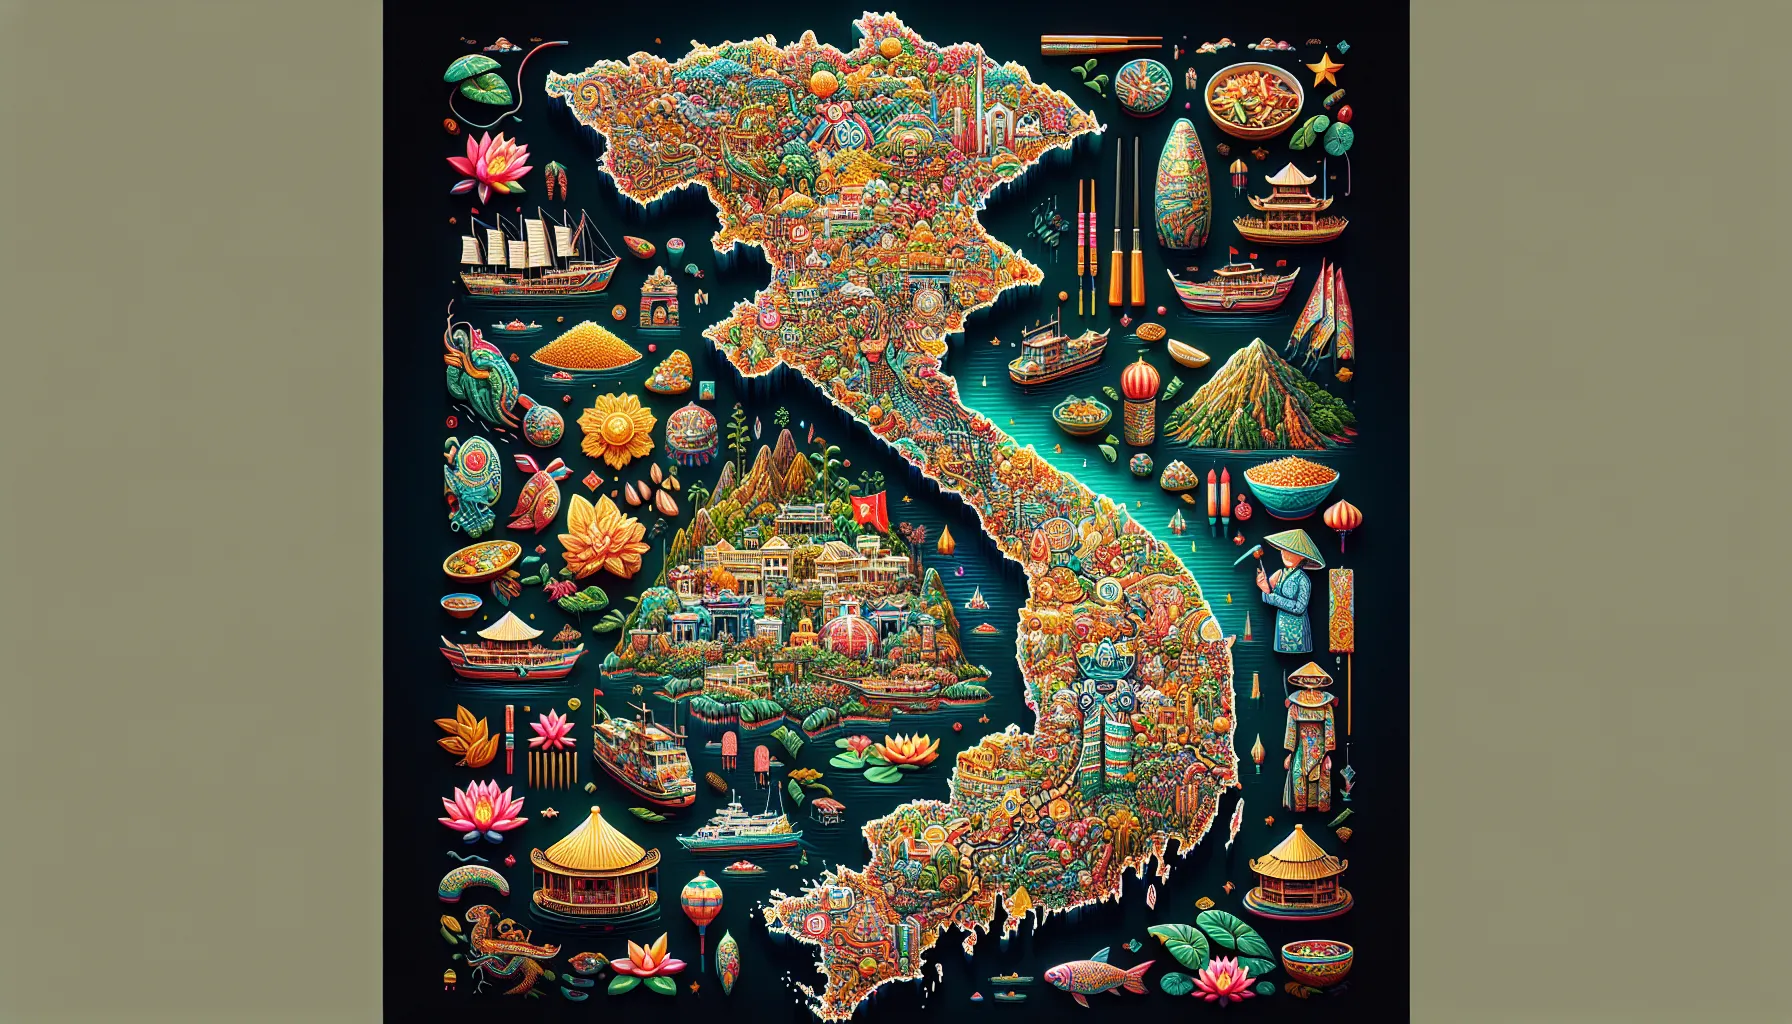 O Vietnã é um país rico em cultura e tradições, e explorar suas várias regiões pode ser uma experiência fascinante. Com a ajuda de mapas, é possível planejar uma viagem para descobrir a diversidade cultural do país.

O Vietnã está localizado no sudeste da Ásia e faz fronteira com a China, Laos e Camboja. É um país longo e estreito, com